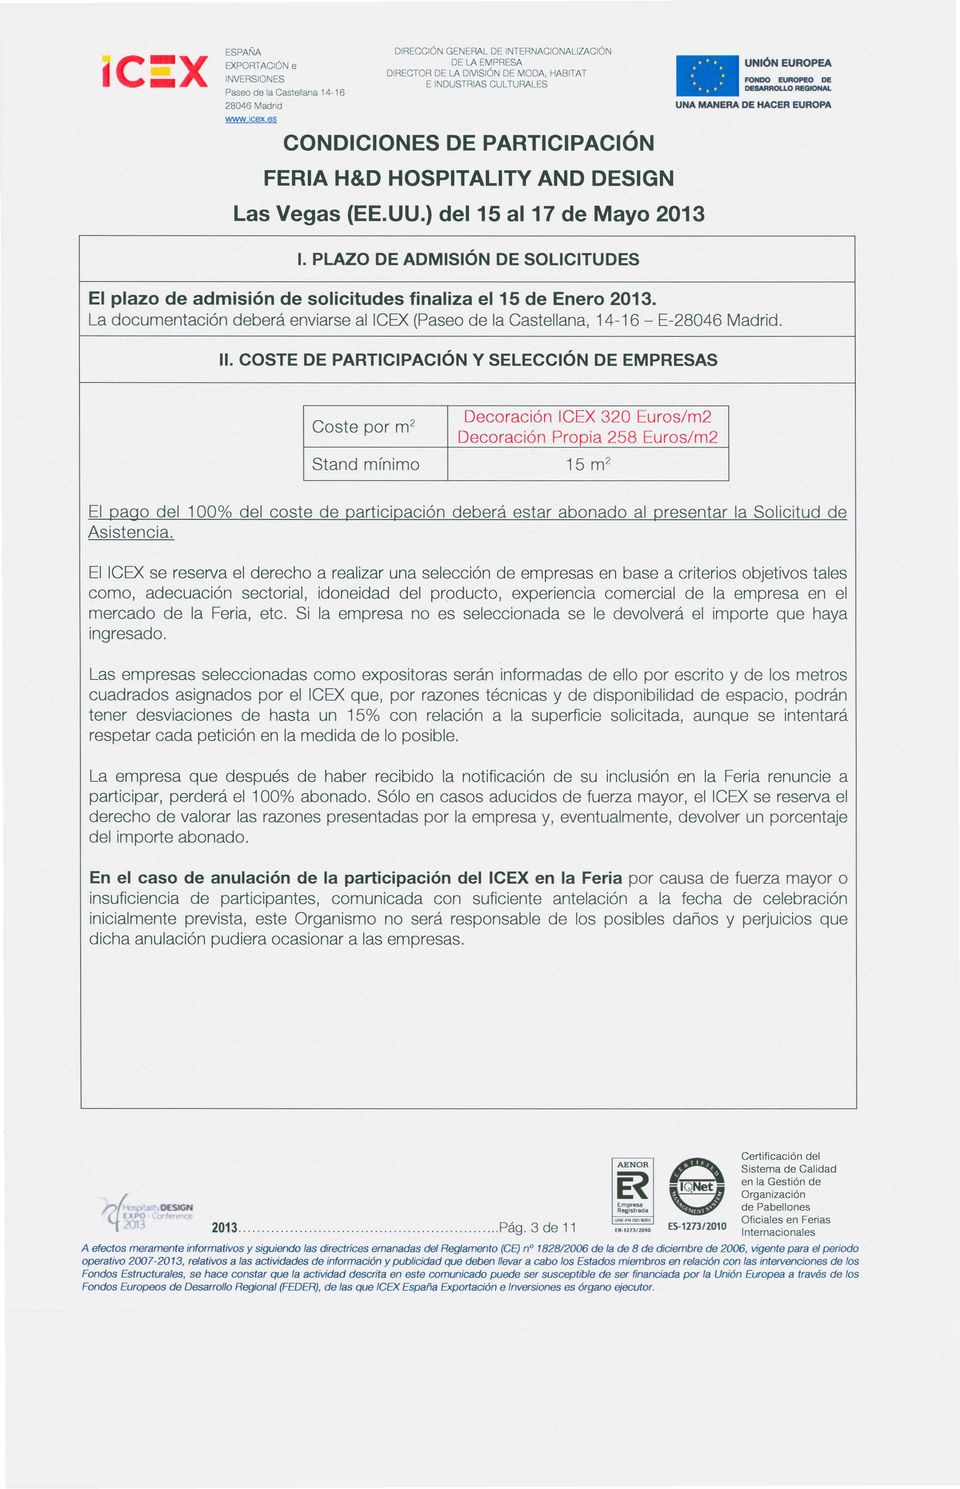 Decoraci6n Decoraci6n ICEX 320 Euros/m2 Propia 258 Euros/m2 15 m 2 EI pago del 100% del coste de participaci6n debera estar abonado al presentar la Solicitud de Asistencia.